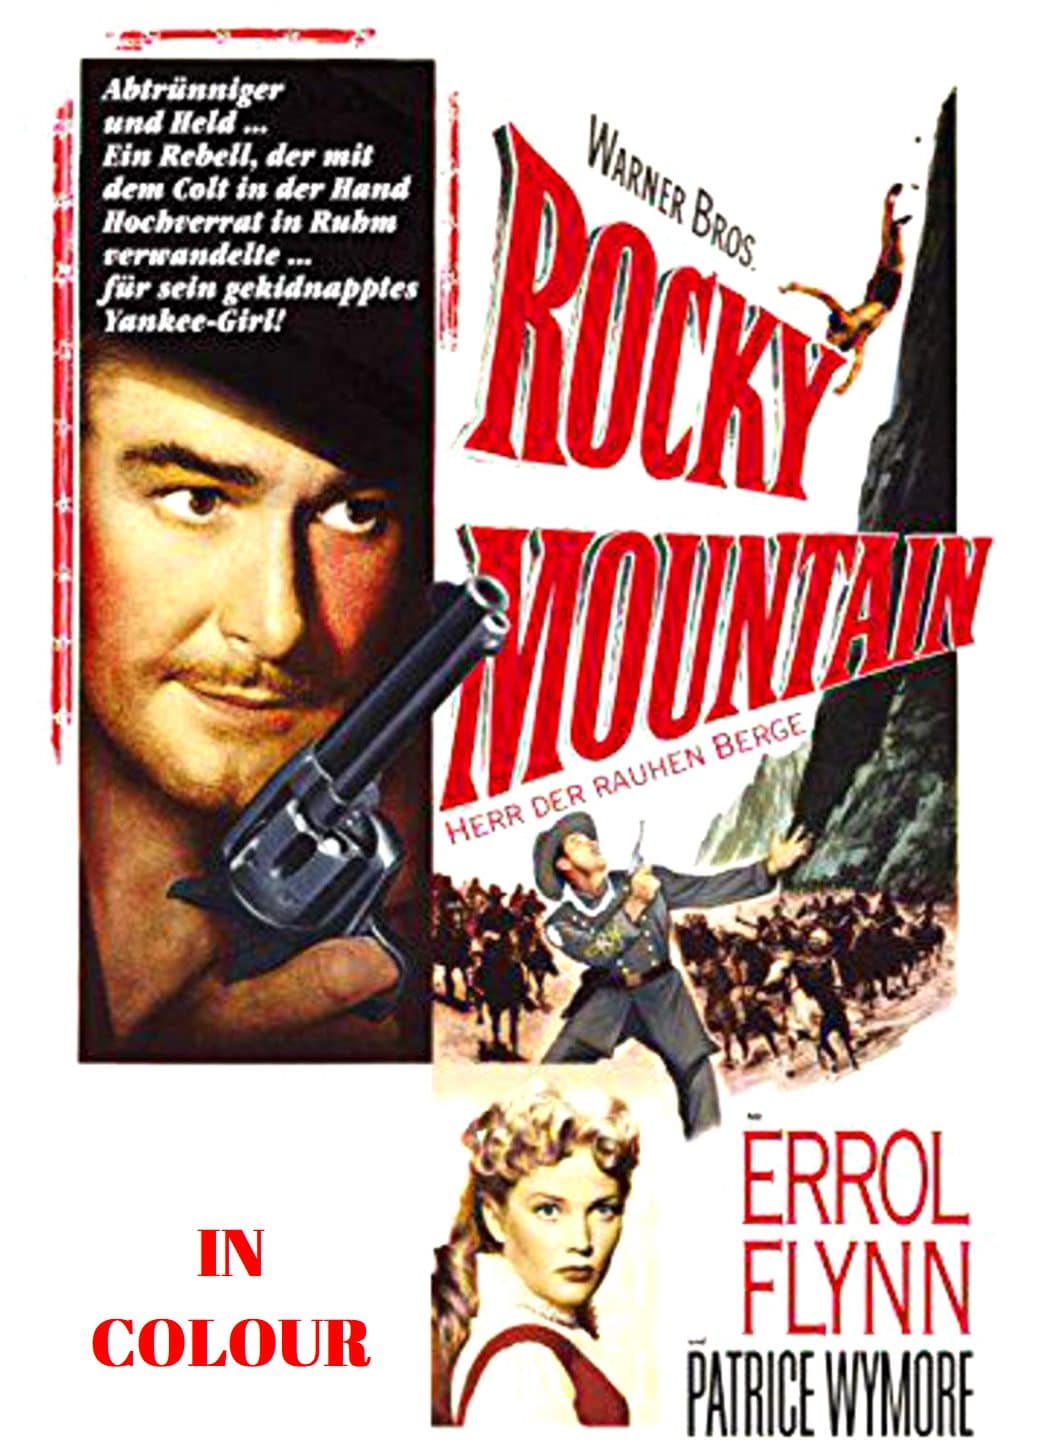 Errol Flynn Westerns Collection - Errol Flynn